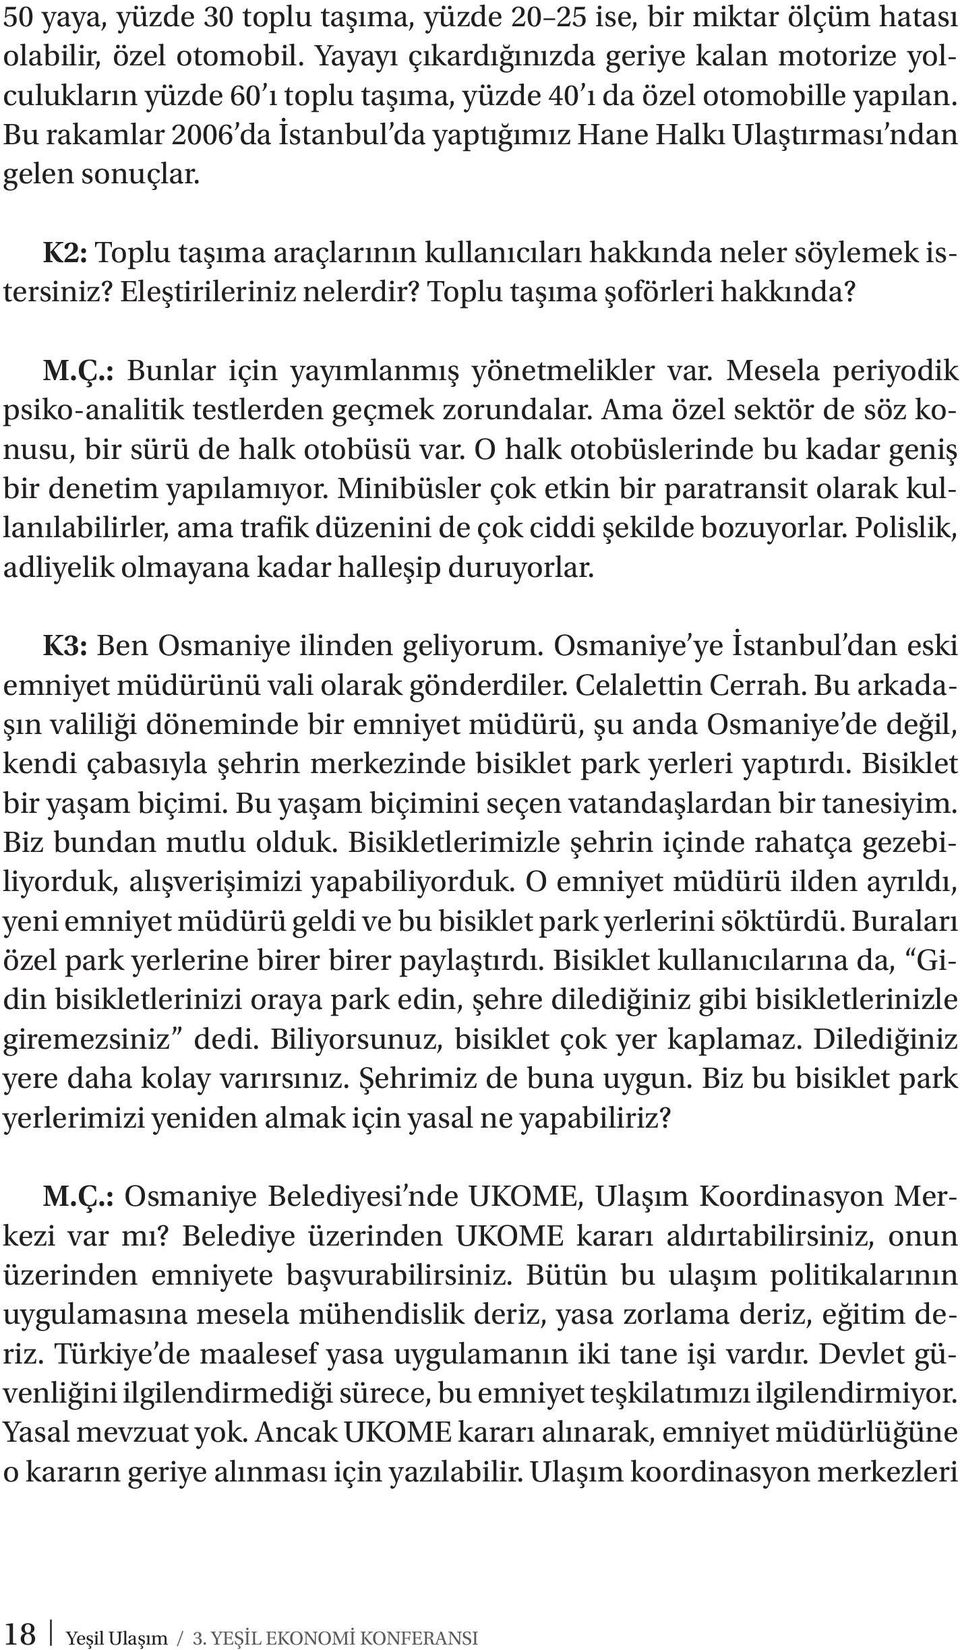 Bu rakamlar 2006 da İstanbul da yaptığımız Hane Halkı Ulaştırması ndan gelen sonuçlar. K2: Toplu taşıma araçlarının kullanıcıları hakkında neler söylemek istersiniz? Eleştirileriniz nelerdir?